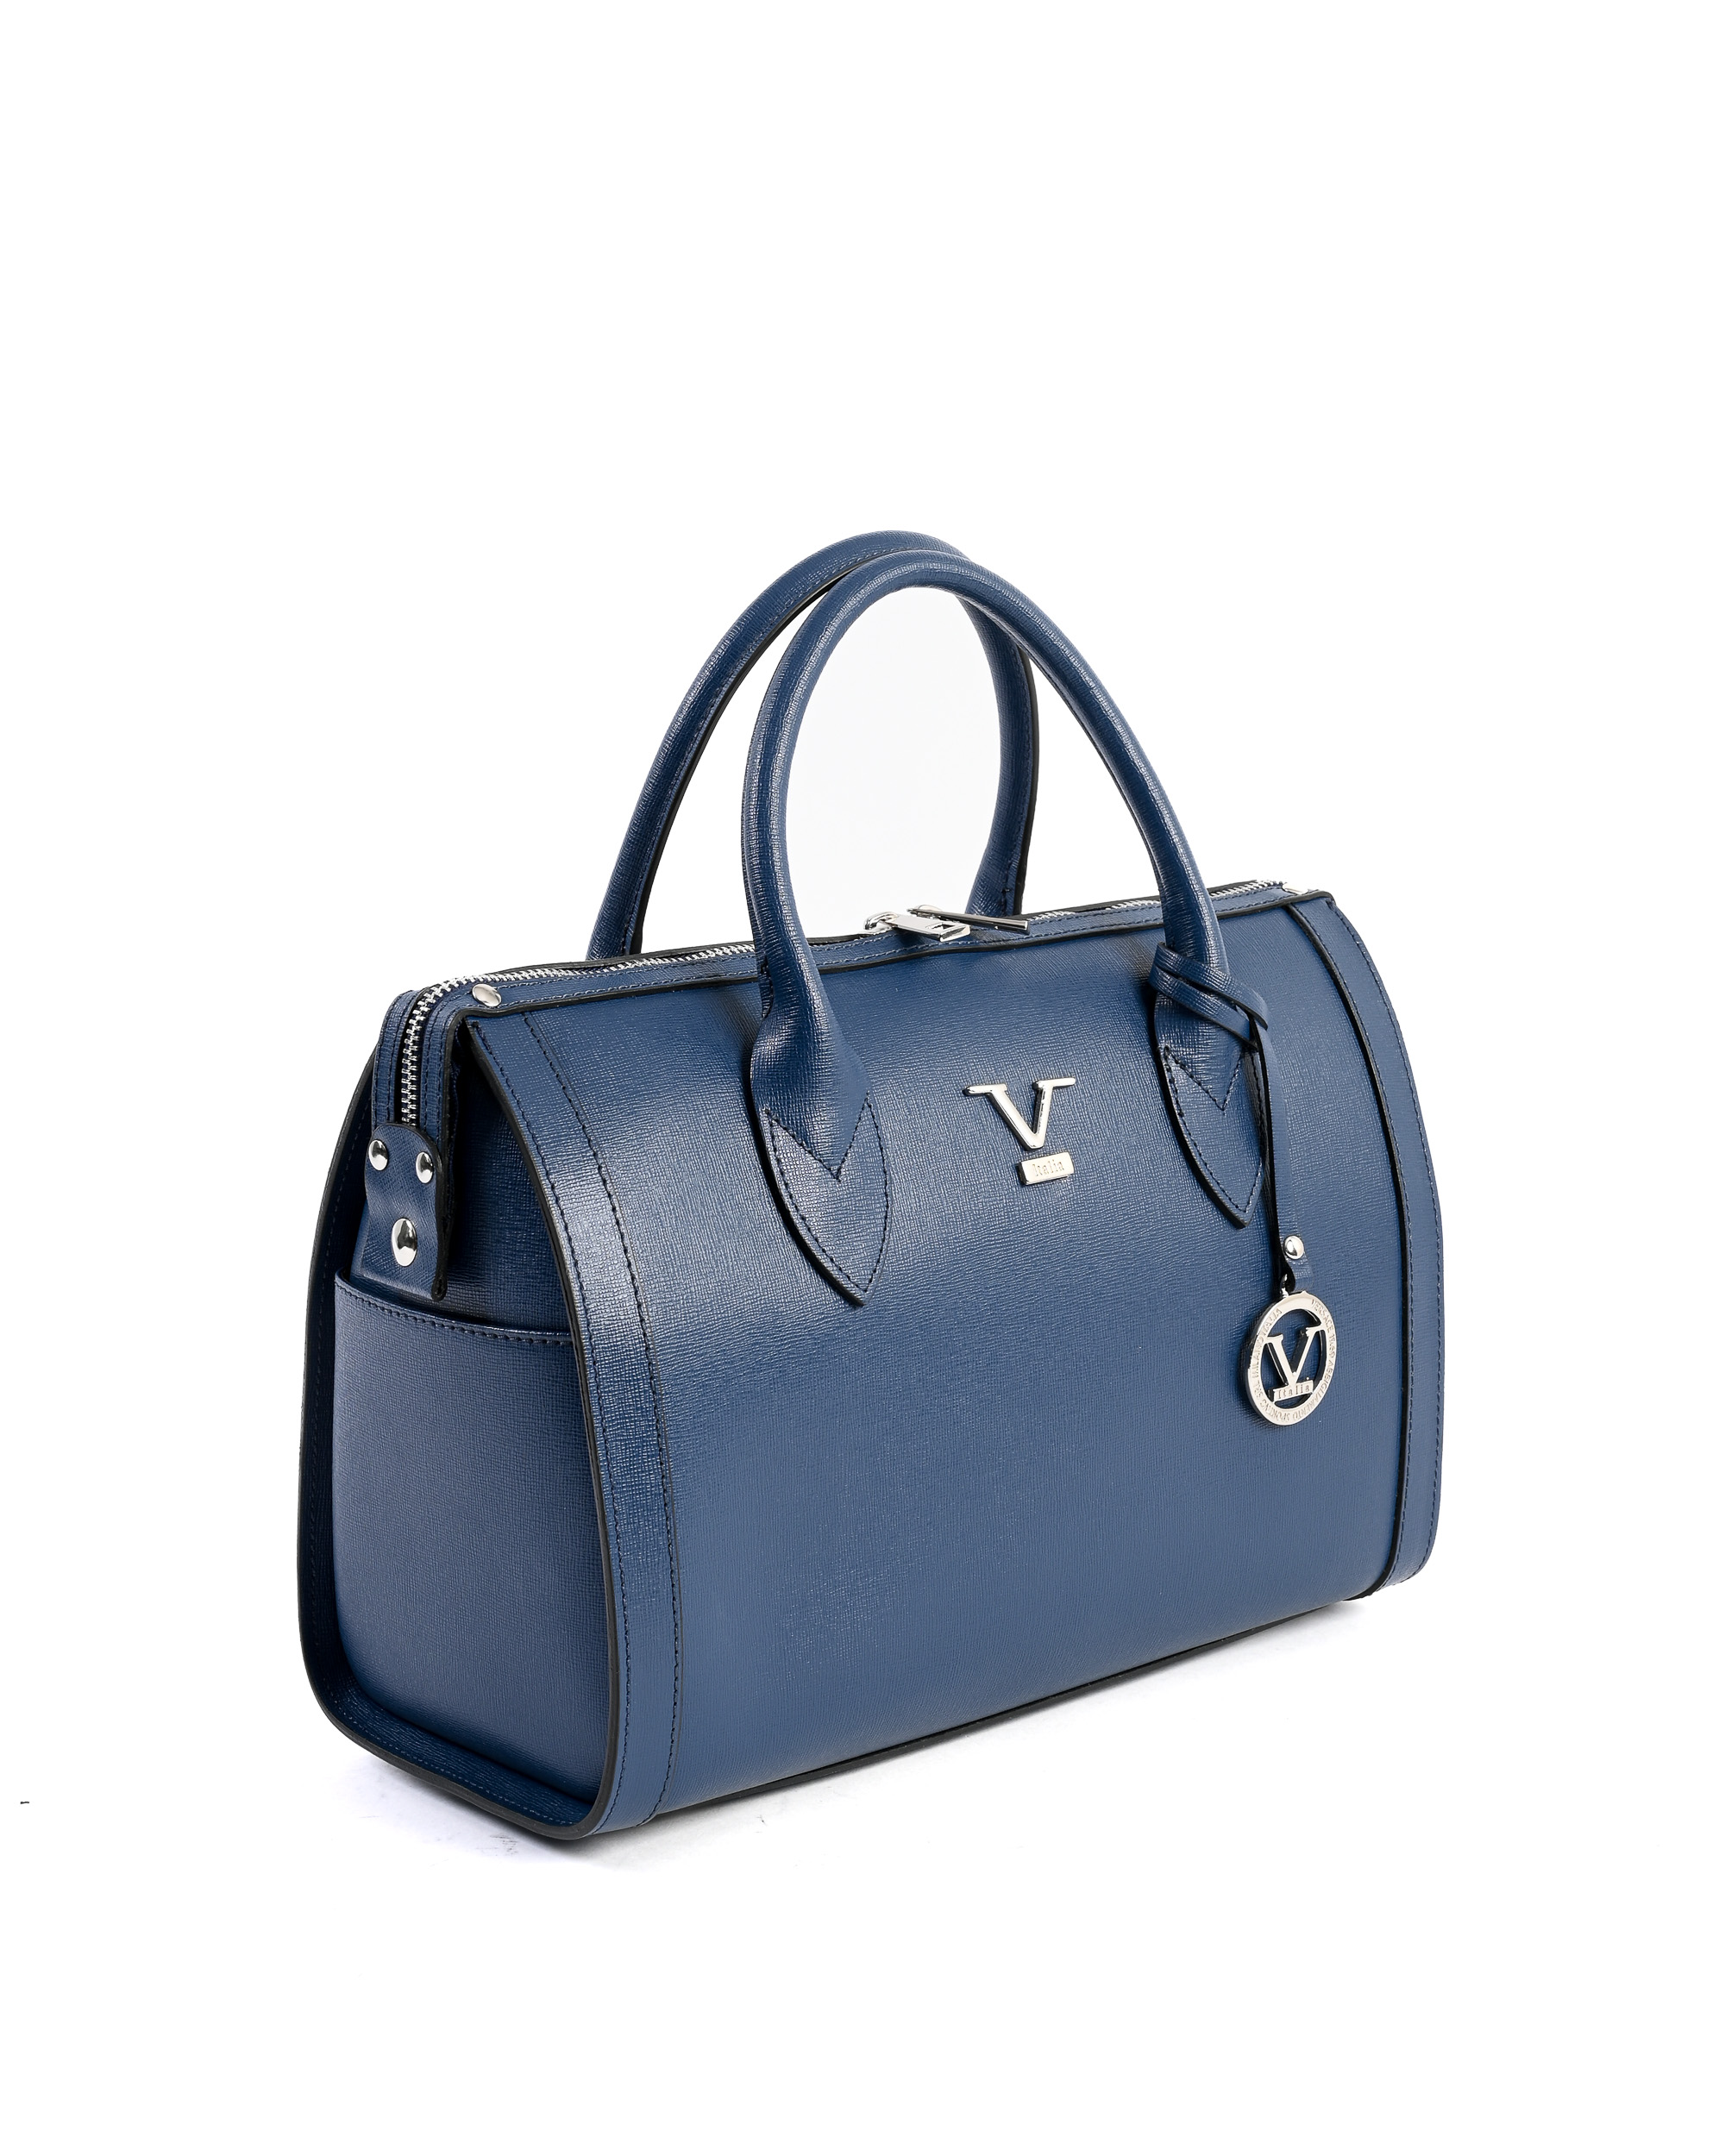 Blue Saffiano Leather Handbag